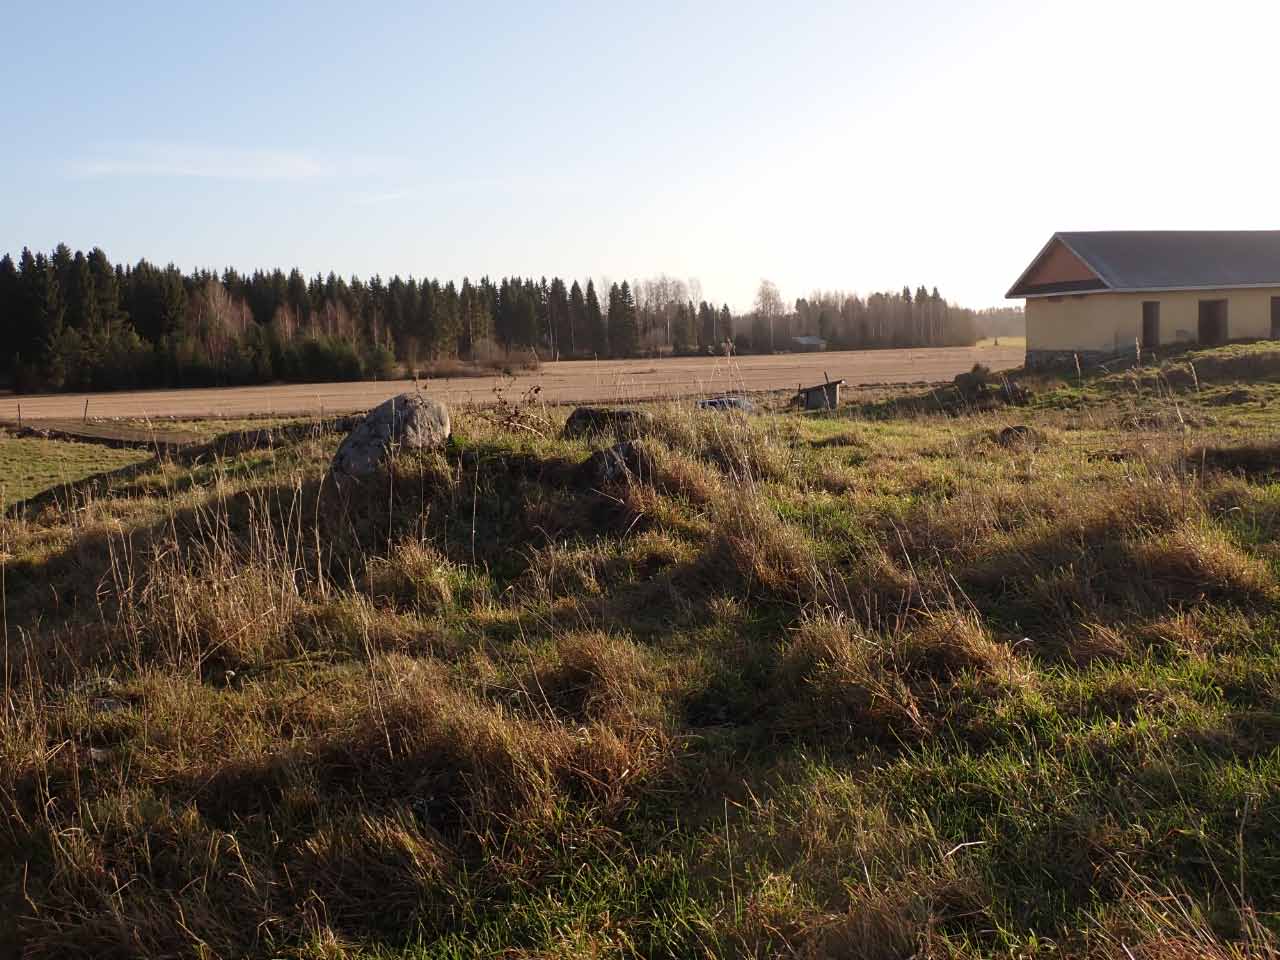 Kuva: Turvettuneita röykkiöitä historiallisella kylätontilla. Samalla alueella on ainakin neljä kuppikiveä. Lahden museot / Päijät-Hämeen alueellinen vastuumuseo. CC BY 4.0 Hannu Poutiainen 6.11.2020